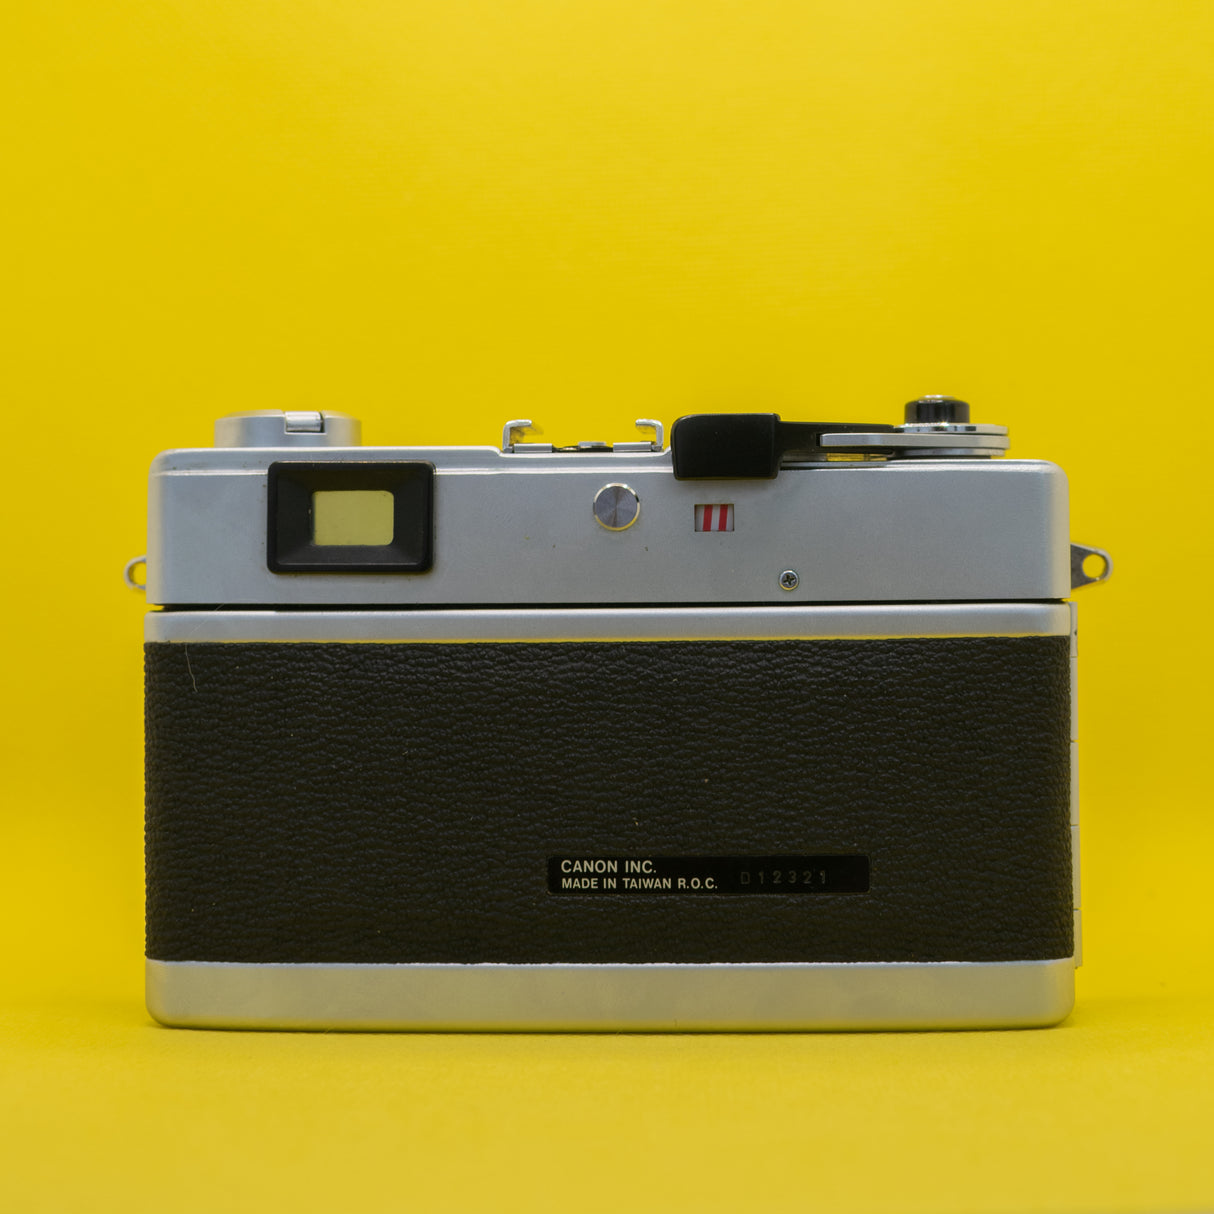 Canon Canonet 28 - Fotocamera a pellicola con telemetro 35 mm